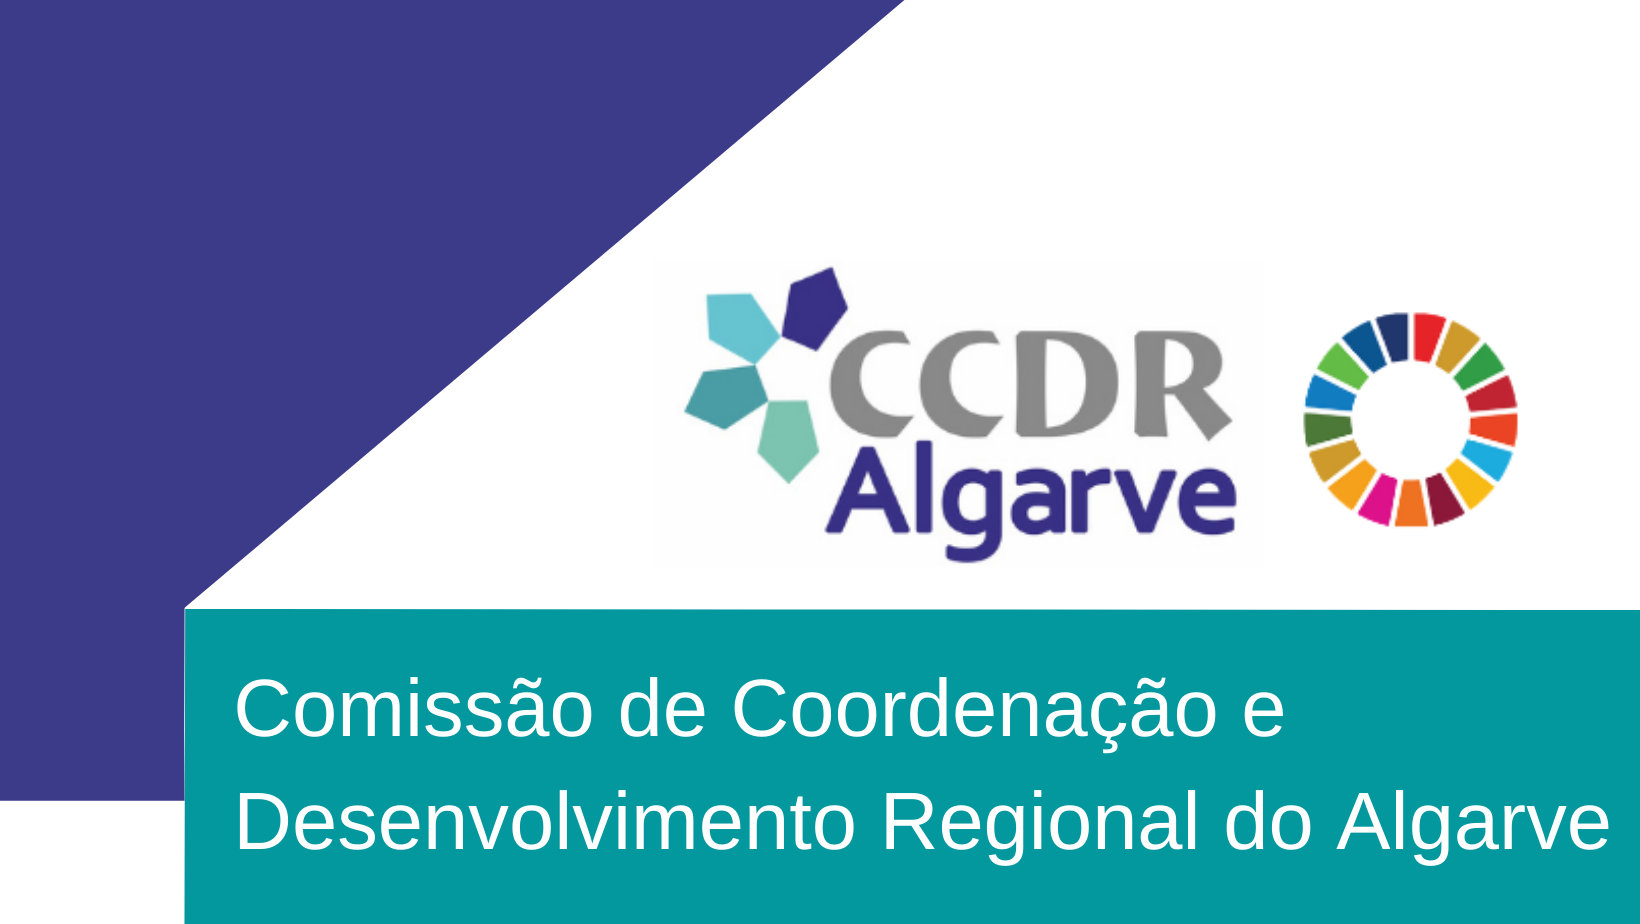 CCDR Algarve: Em defesa da valorização do património cultural e da Fortaleza de Sagres